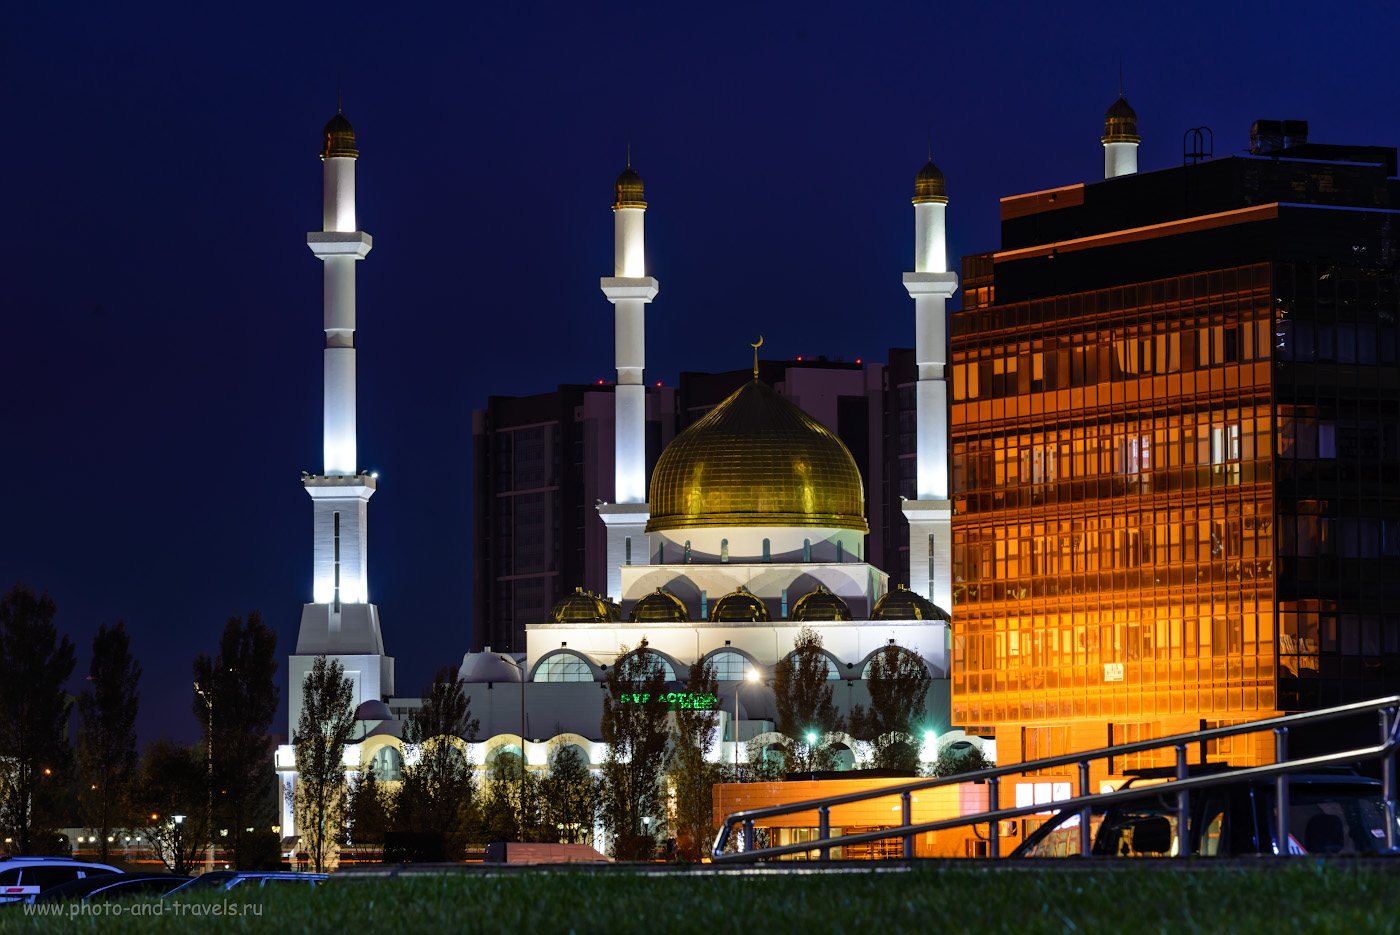 Фото 16. Мечеть Нур-Астана до постройки мечети Хазрет-Султан была самой большой в Центральной Азии. Какие достопримечательности посмотреть в столице Казахстана за день. 3.0, +0.67, 9.0, 100, 150.